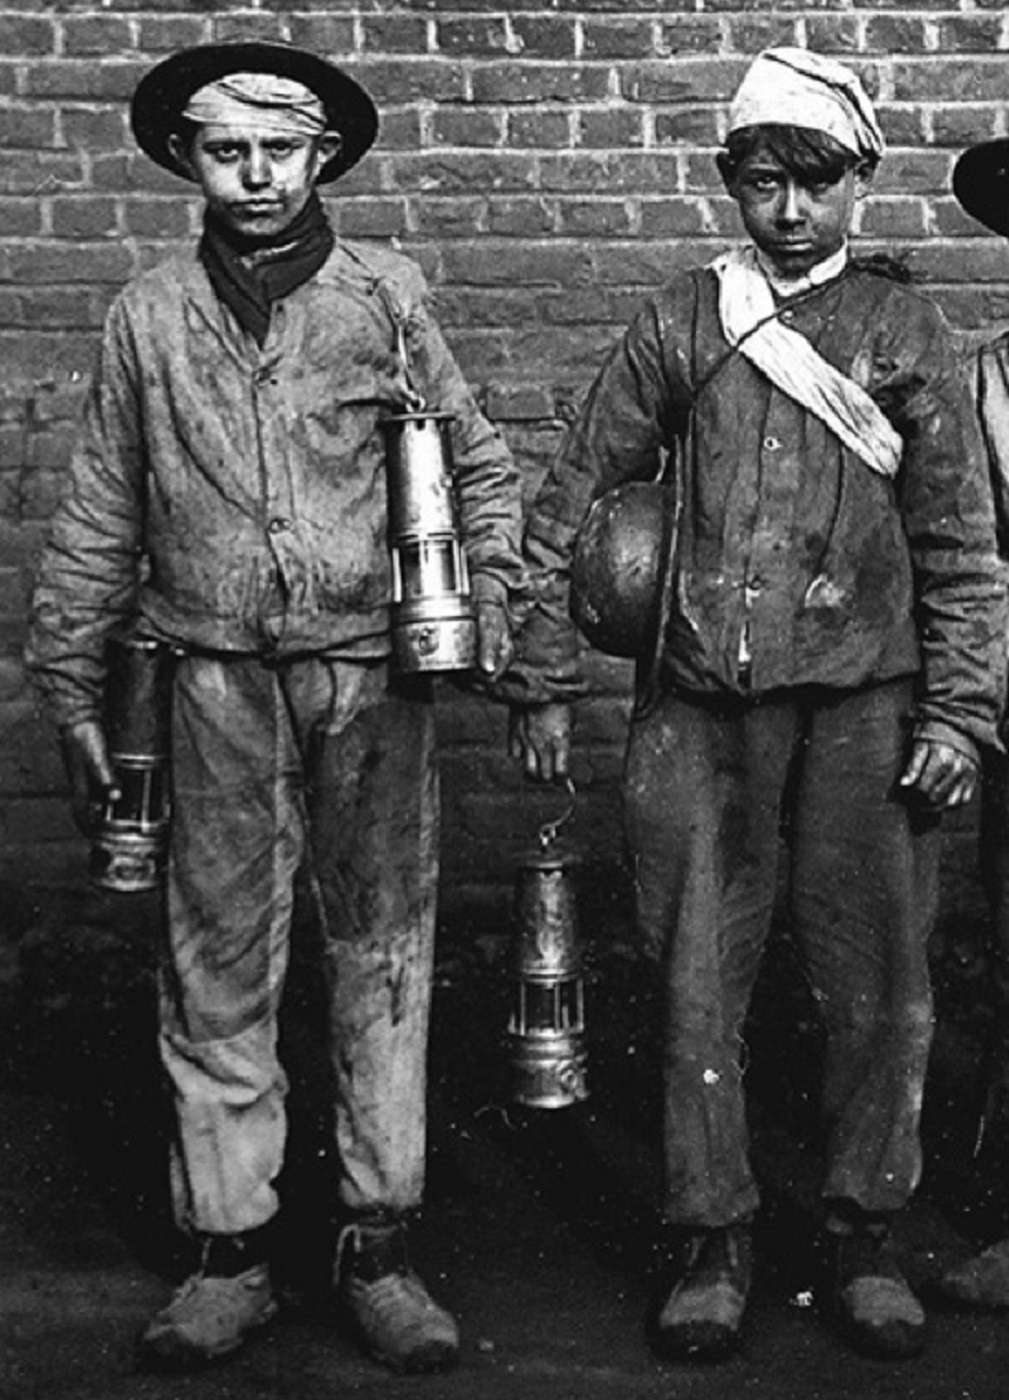 "Galibots", jeunes garçons envoyés dans les galeries trop étroites pour les adultes, vers 1910. Blog d'André de Marles. © blogspot.com.